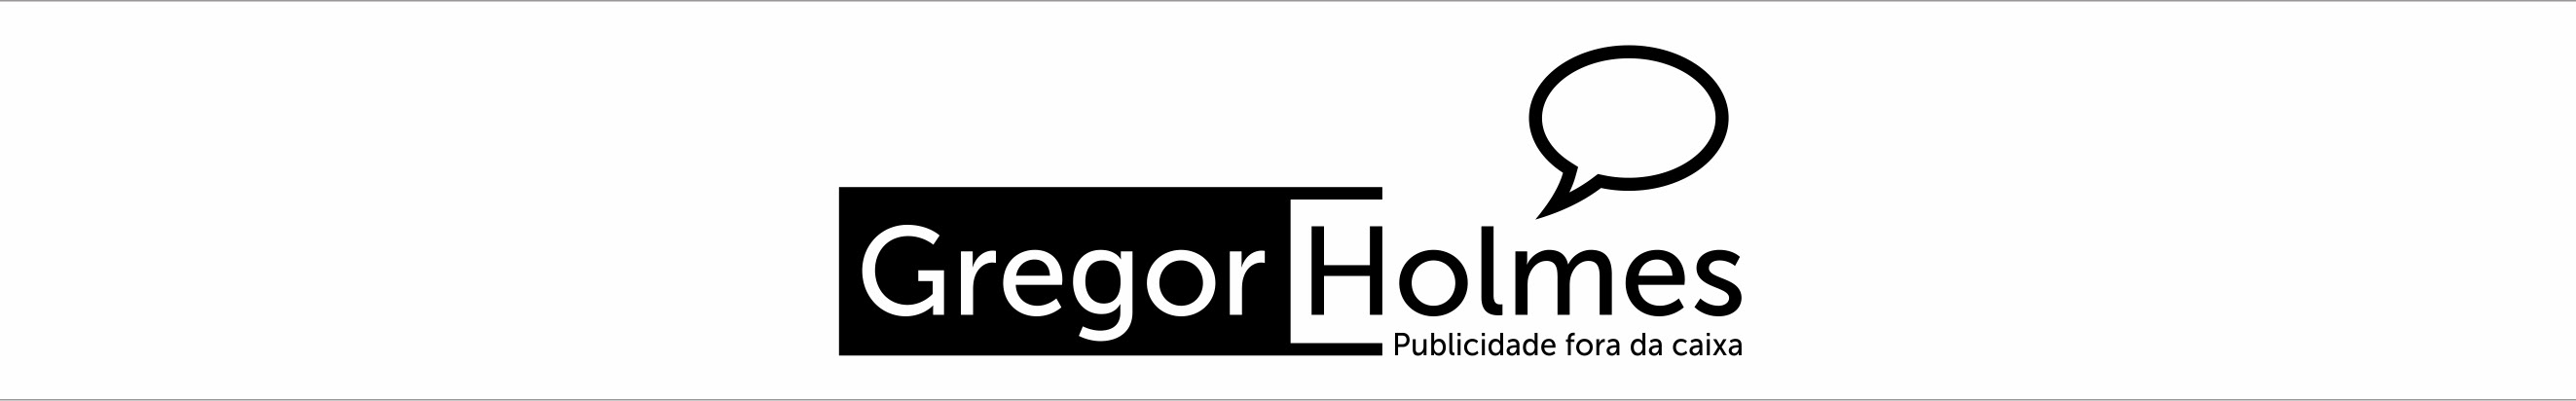 Gregor Holmes's profile banner